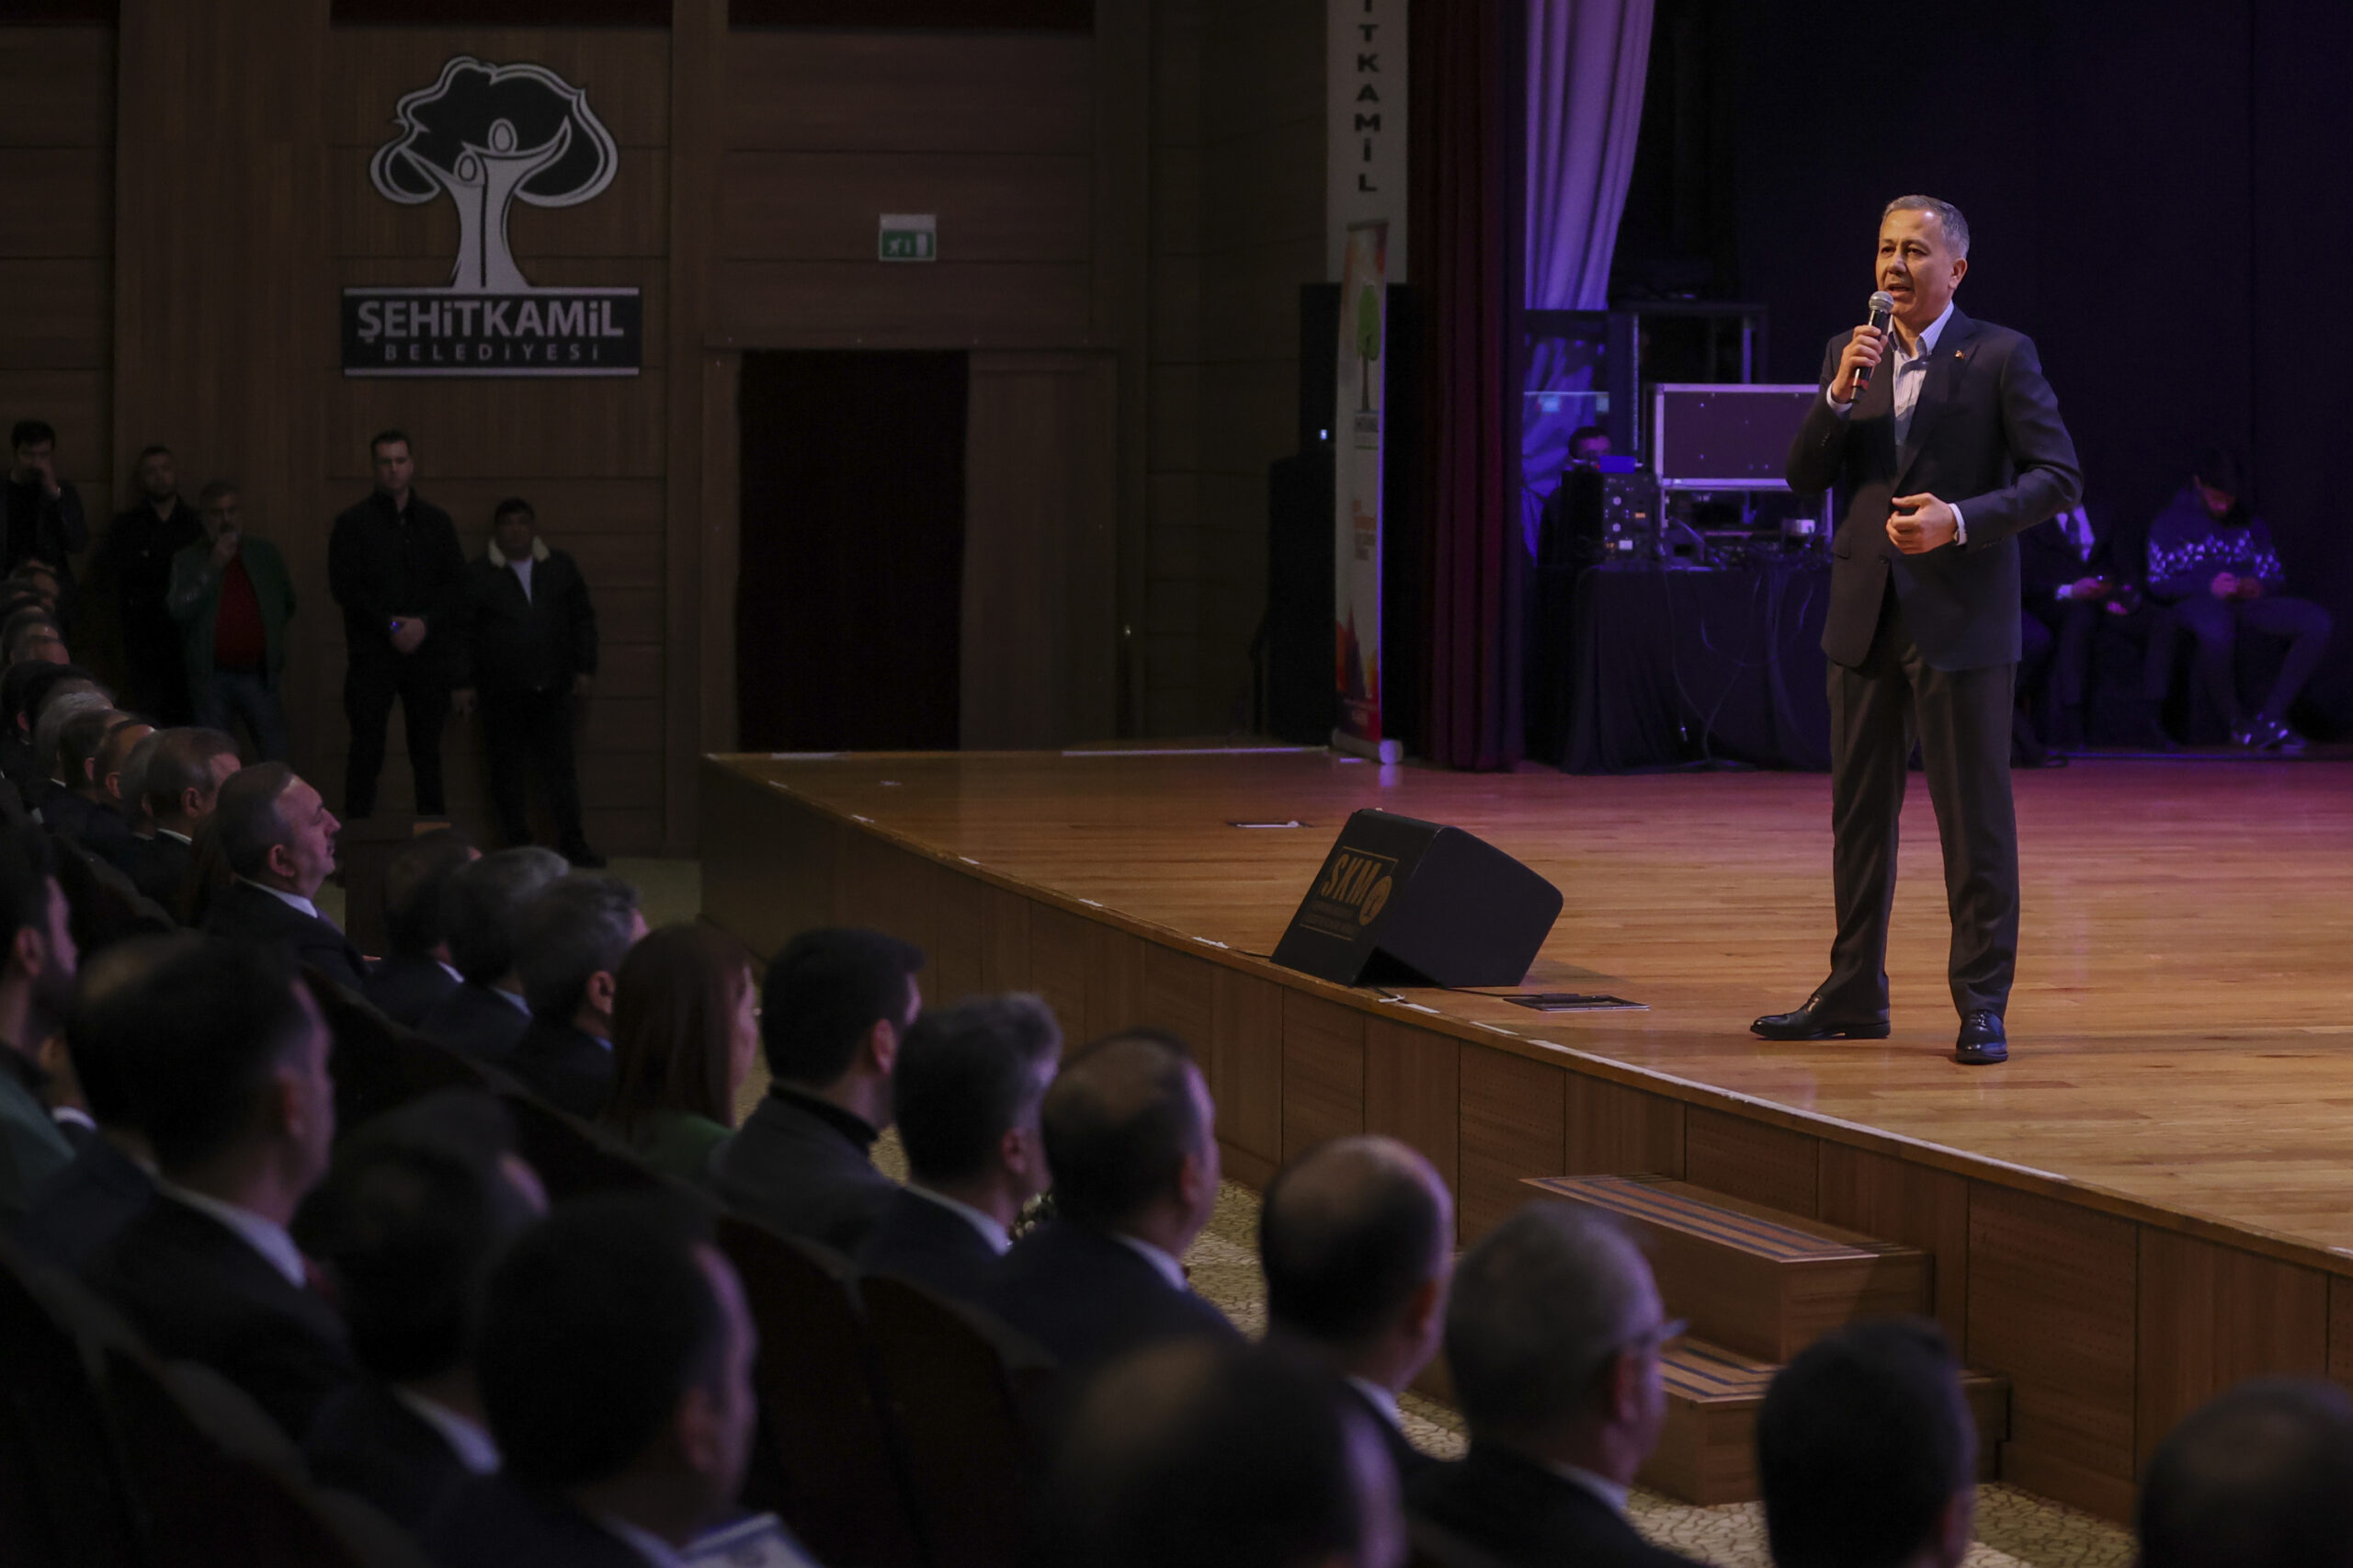 İçişleri Bakanı Yerlikaya “Türkiye’nin Huzuru Gaziantep’in Huzuru” programında konuştu